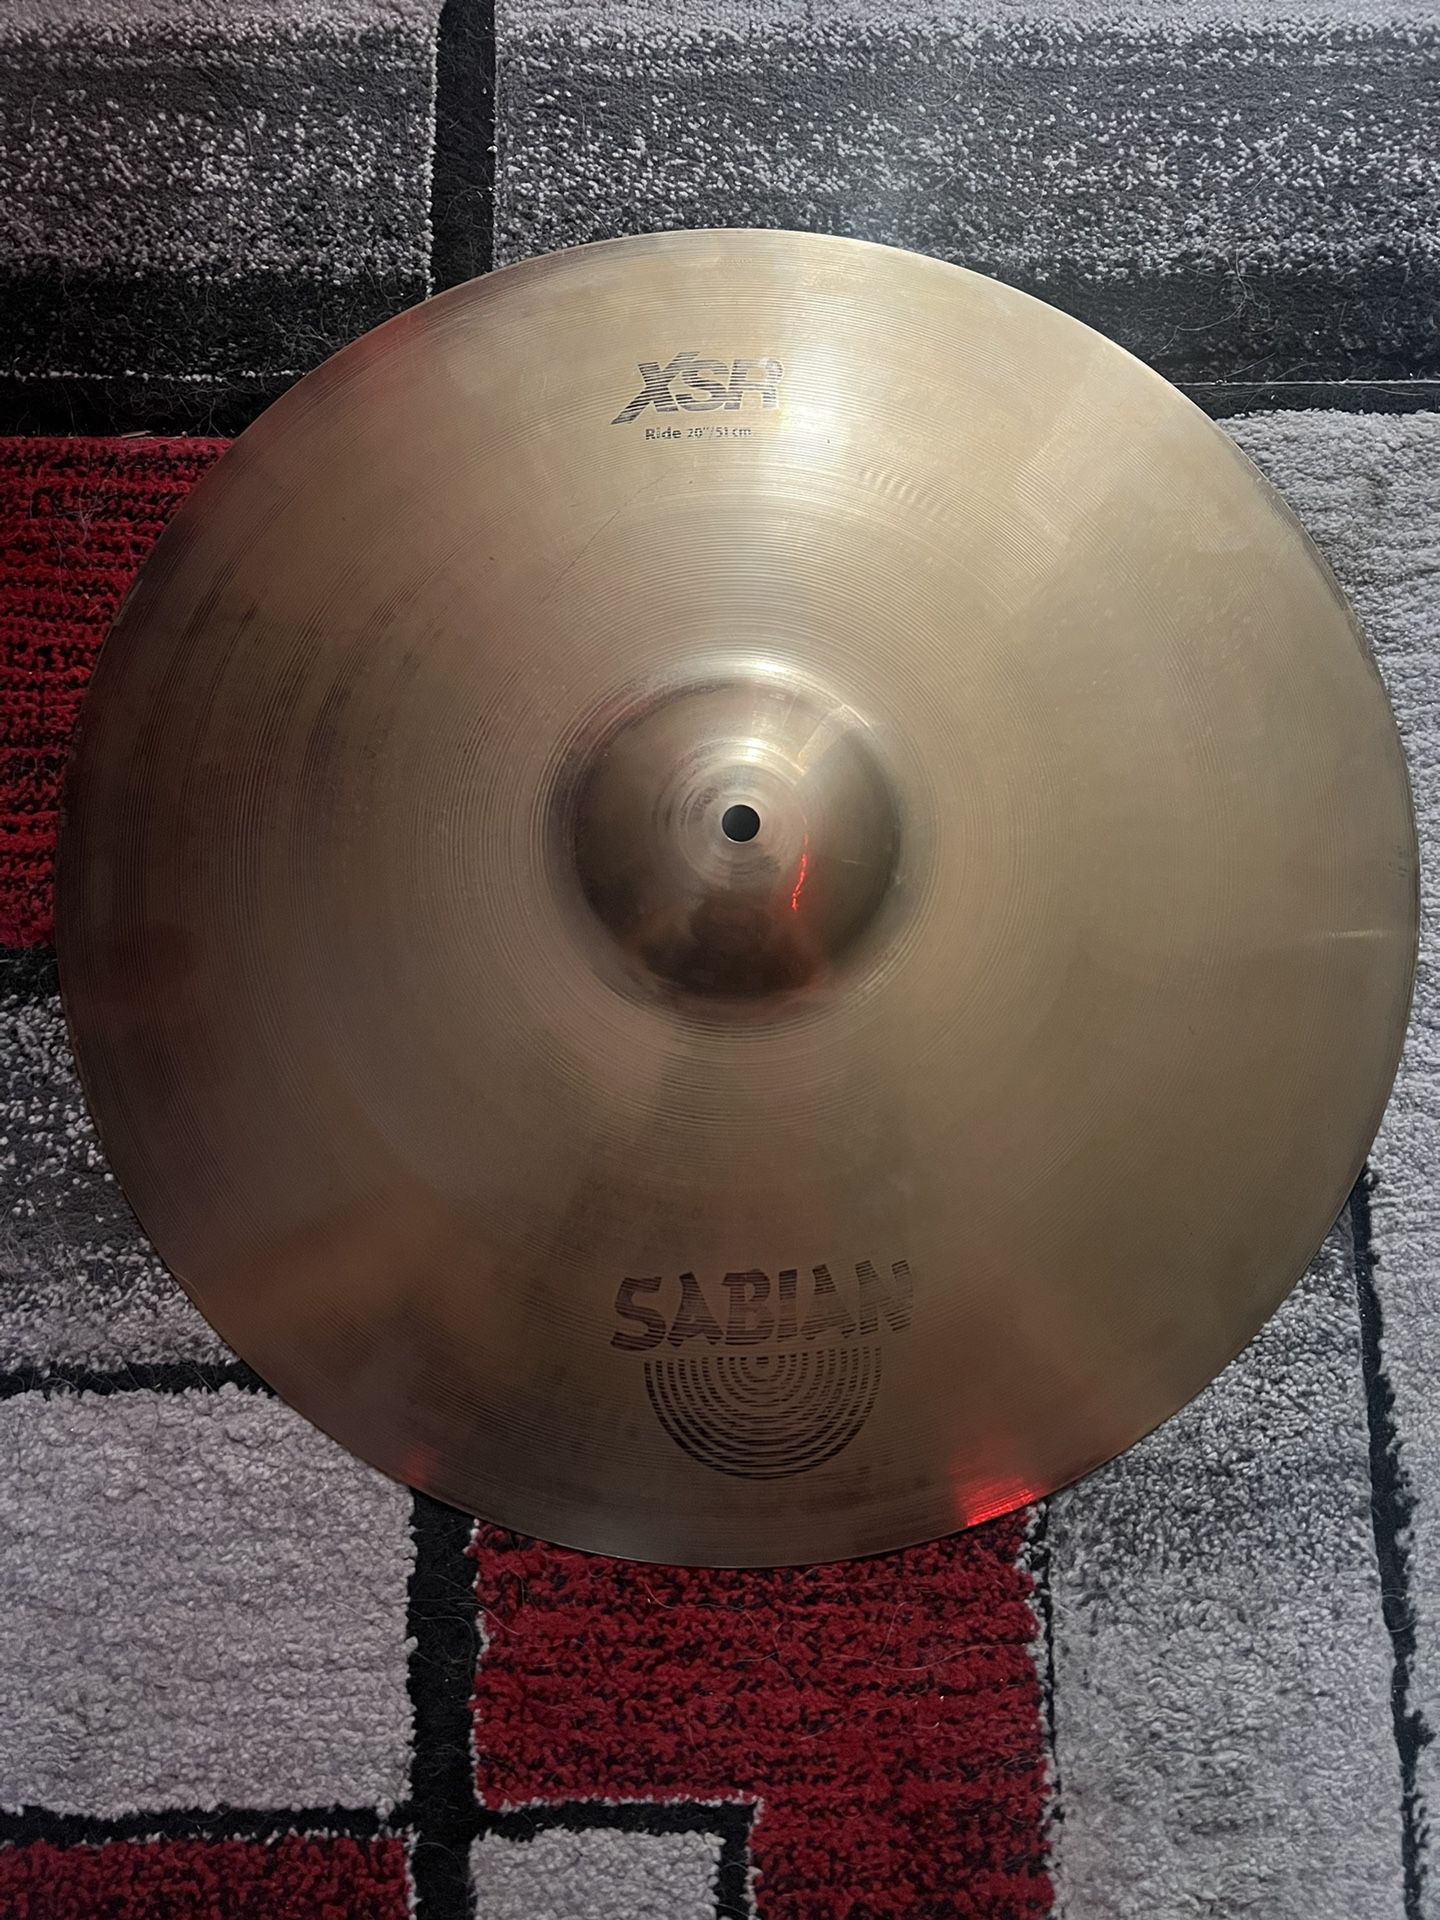 SABIAN XSR 20” Ride Cymbal